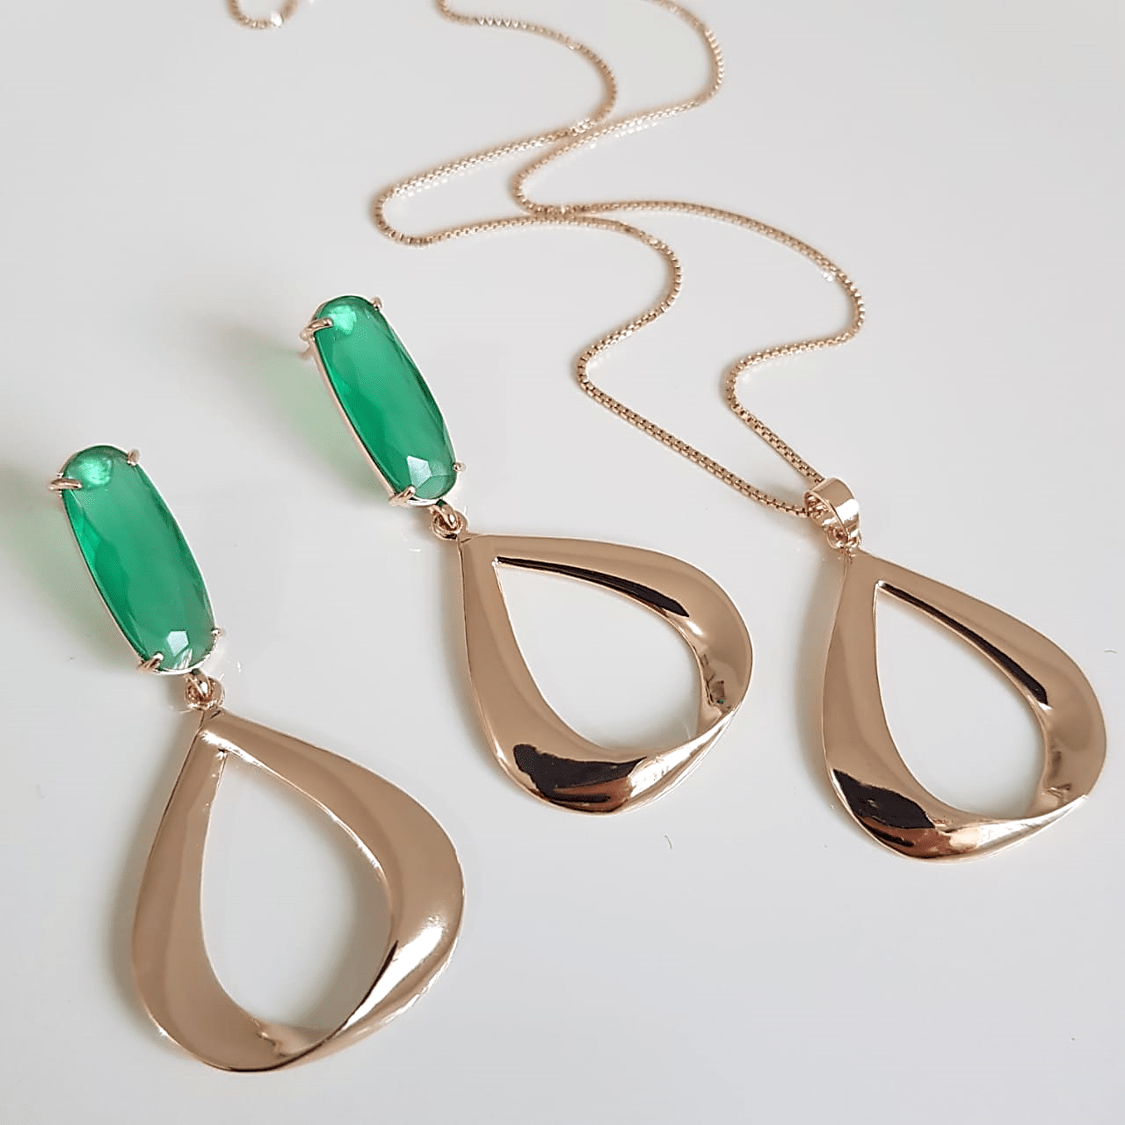 1-Conjunto de colar + brinco com cristal verde esmeralda